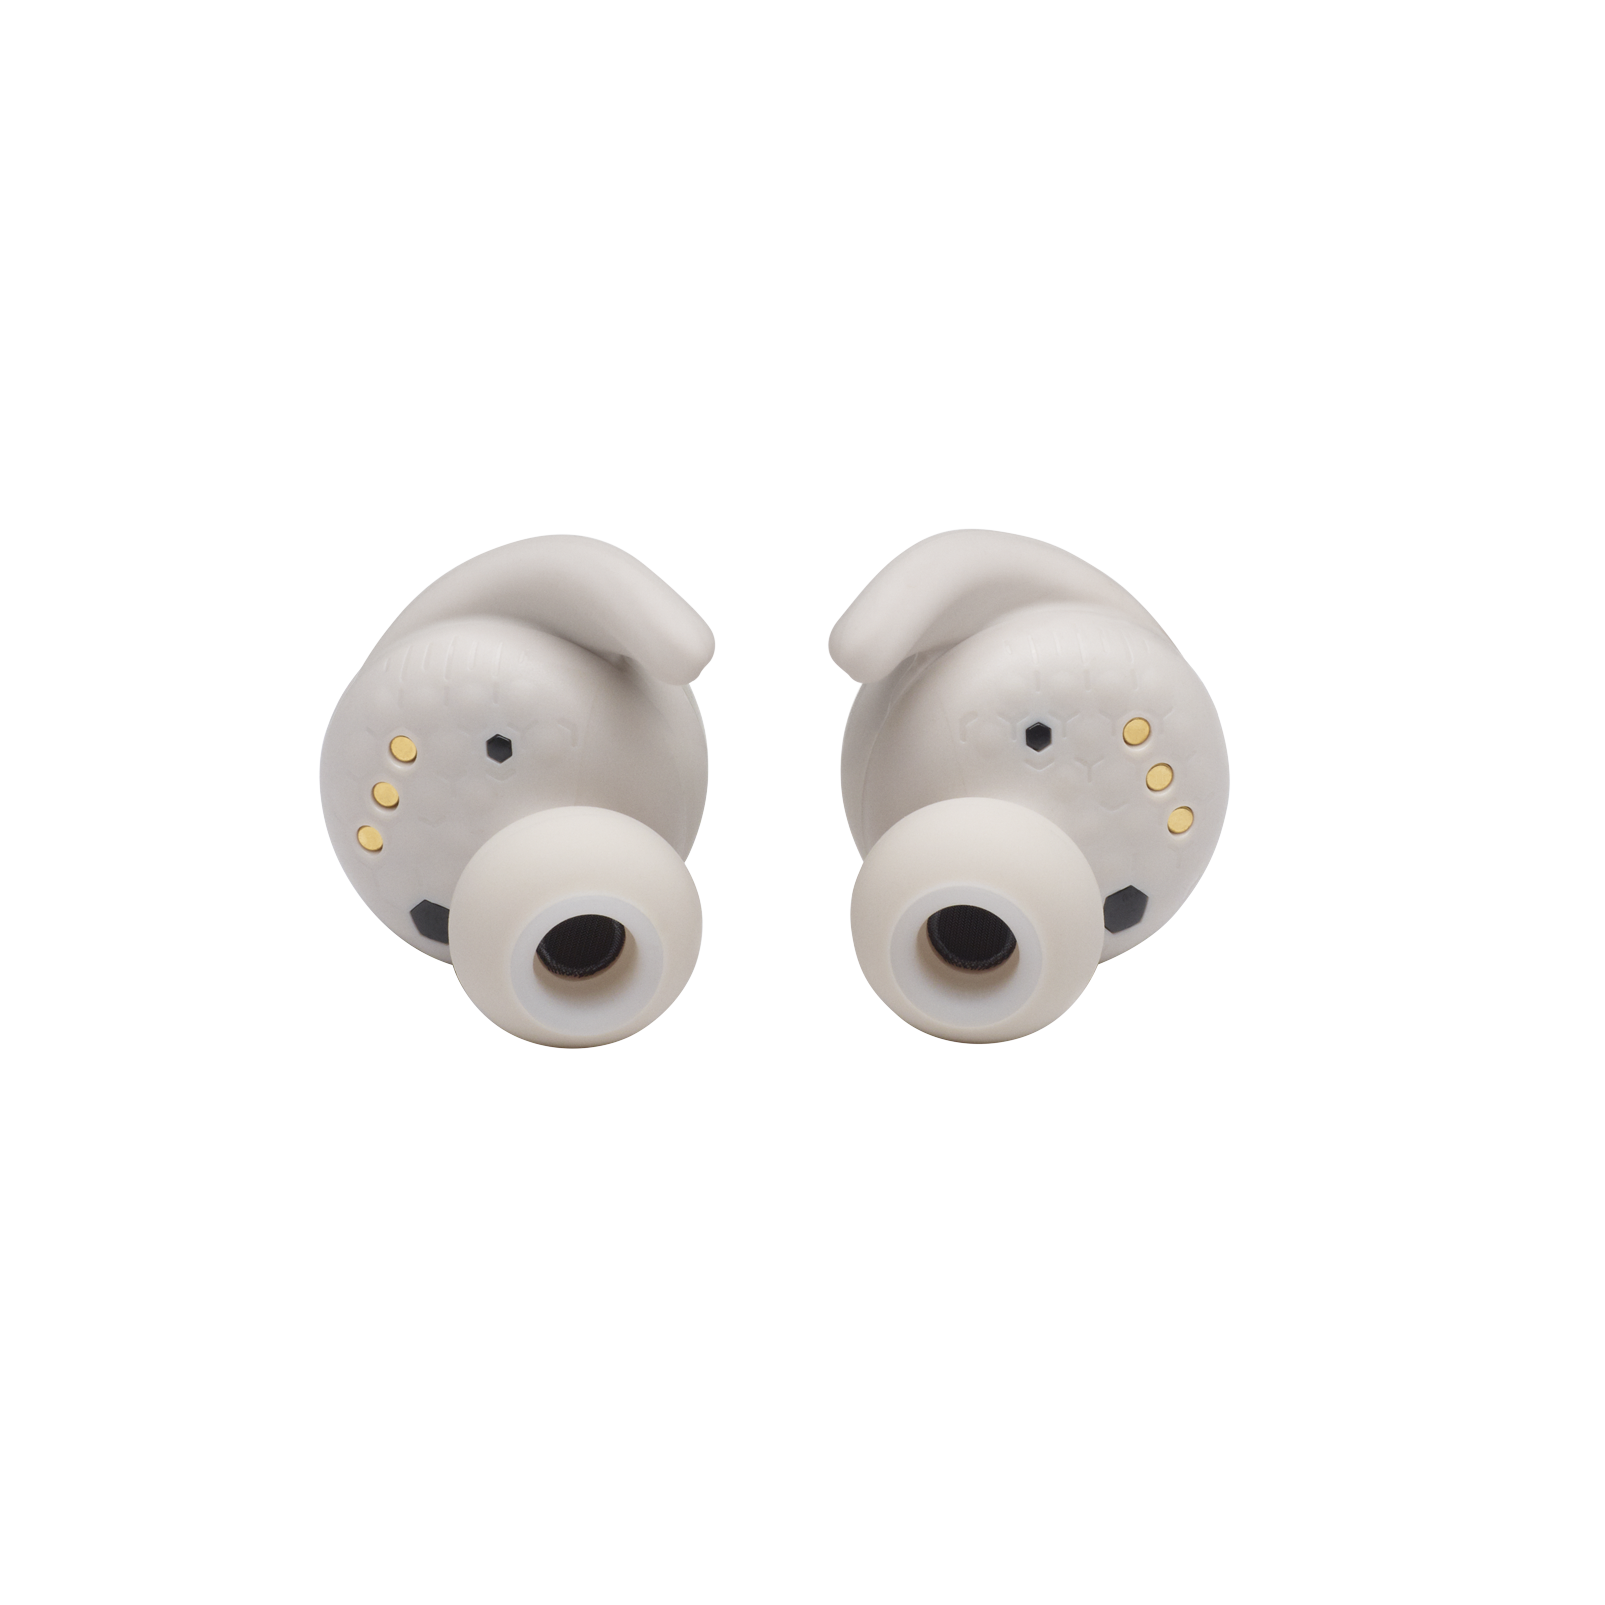 JBL Reflect Mini NC - White - Waterproof true wireless Noise Cancelling sport earbuds - Detailshot 2